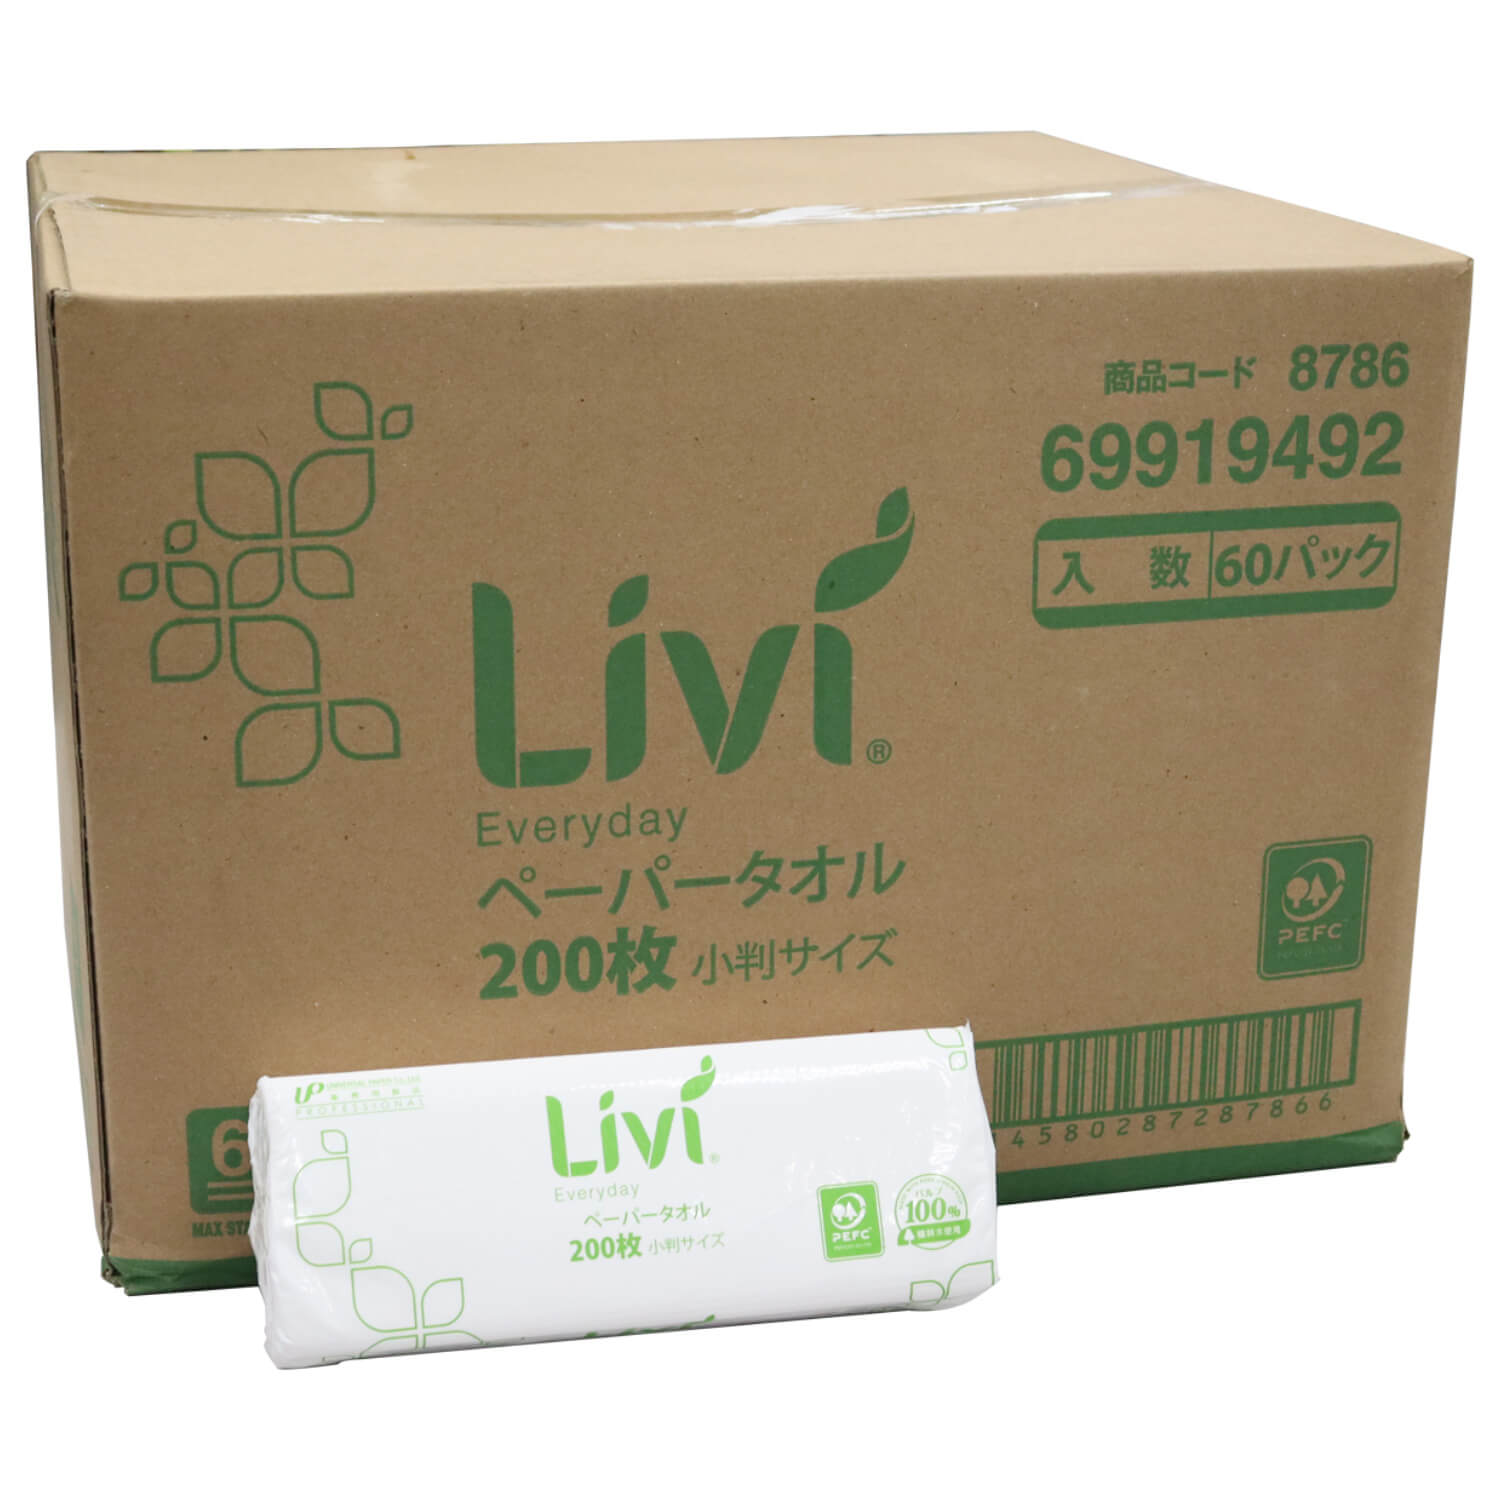 Livi(リビィ) エブリデイ ペーパータオル 小判サイズ 200枚×60袋